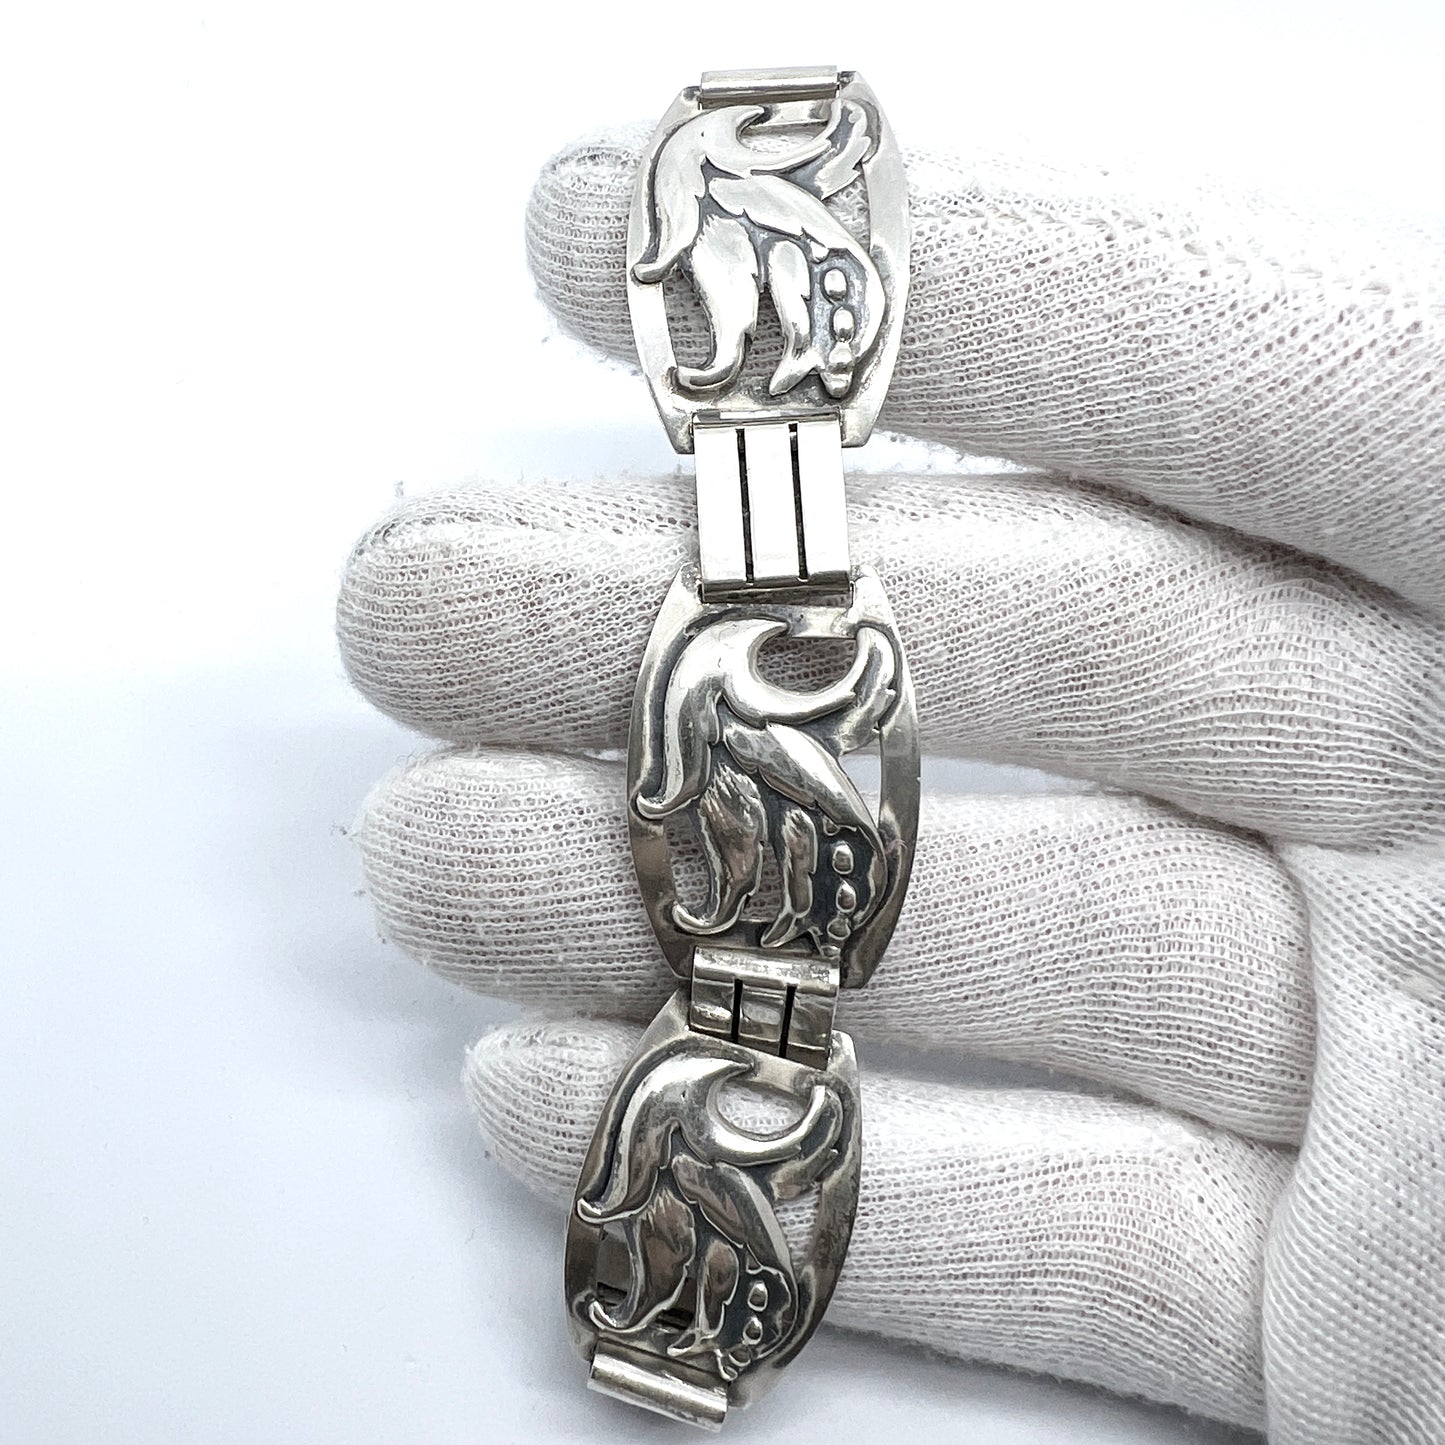 Maker R.R. Denmark Vintage c 1940s Solid Silver Bracelet. Design no 147.